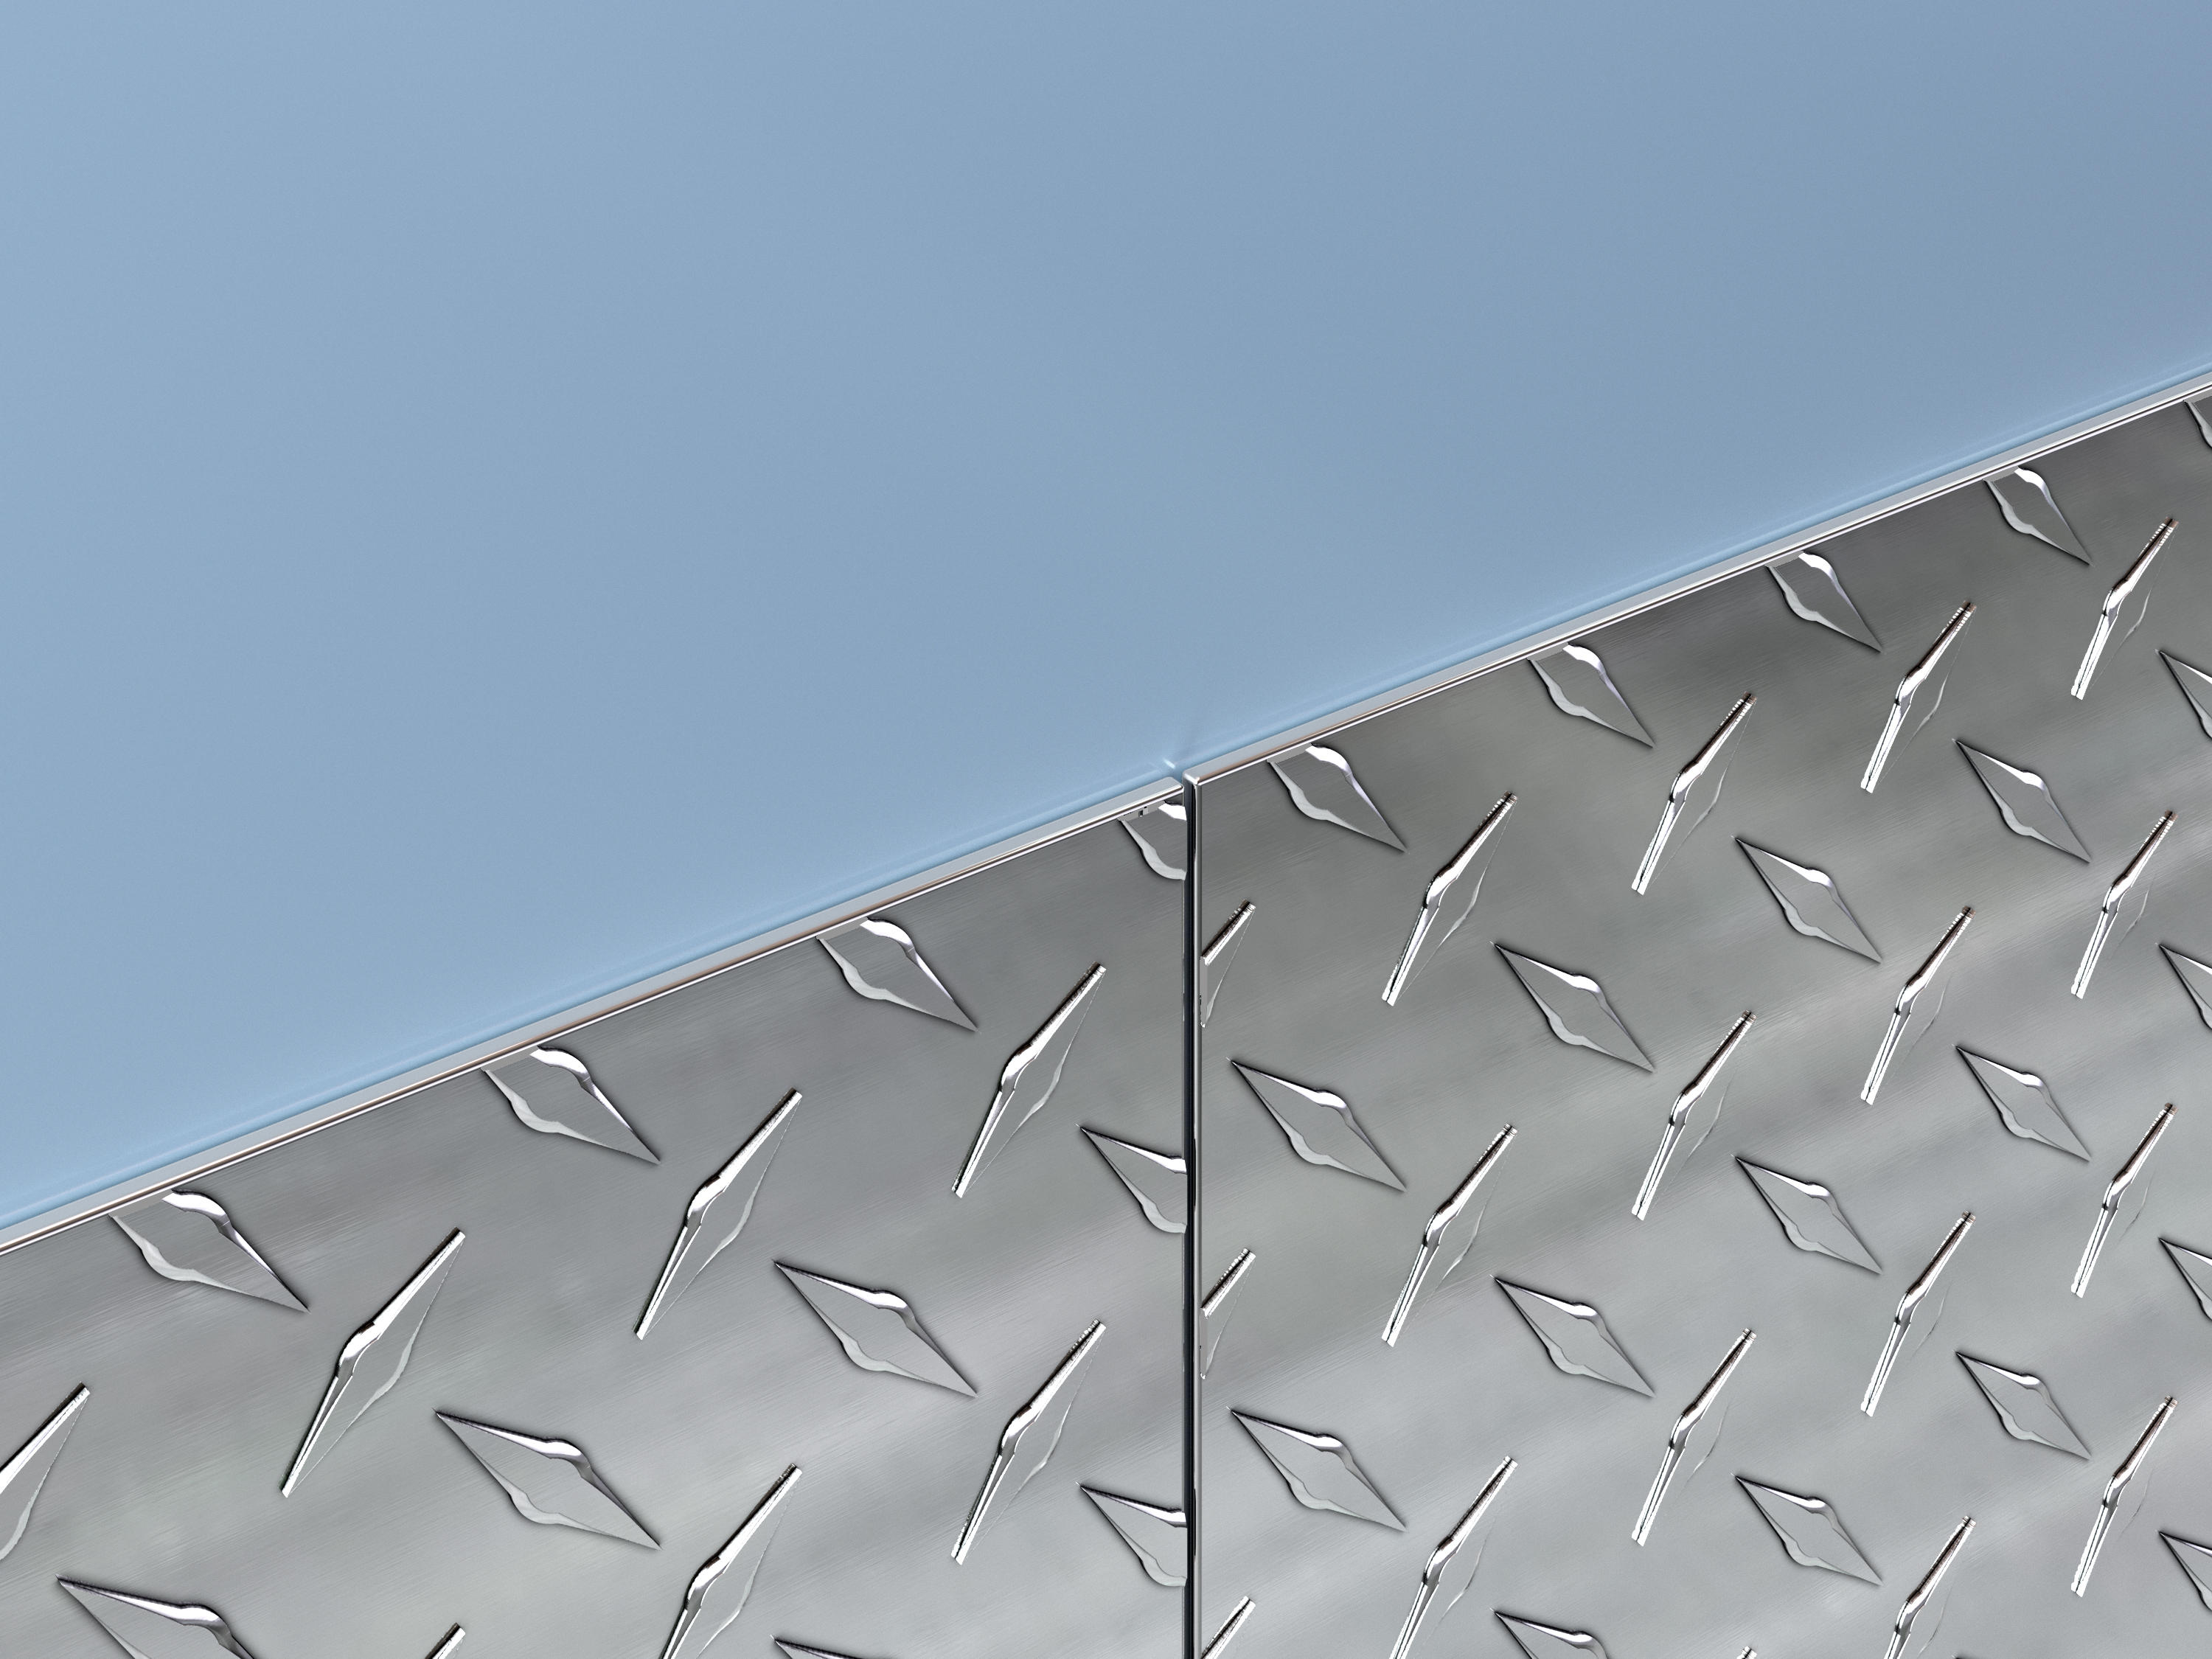 Diamond Plate Wall Protection